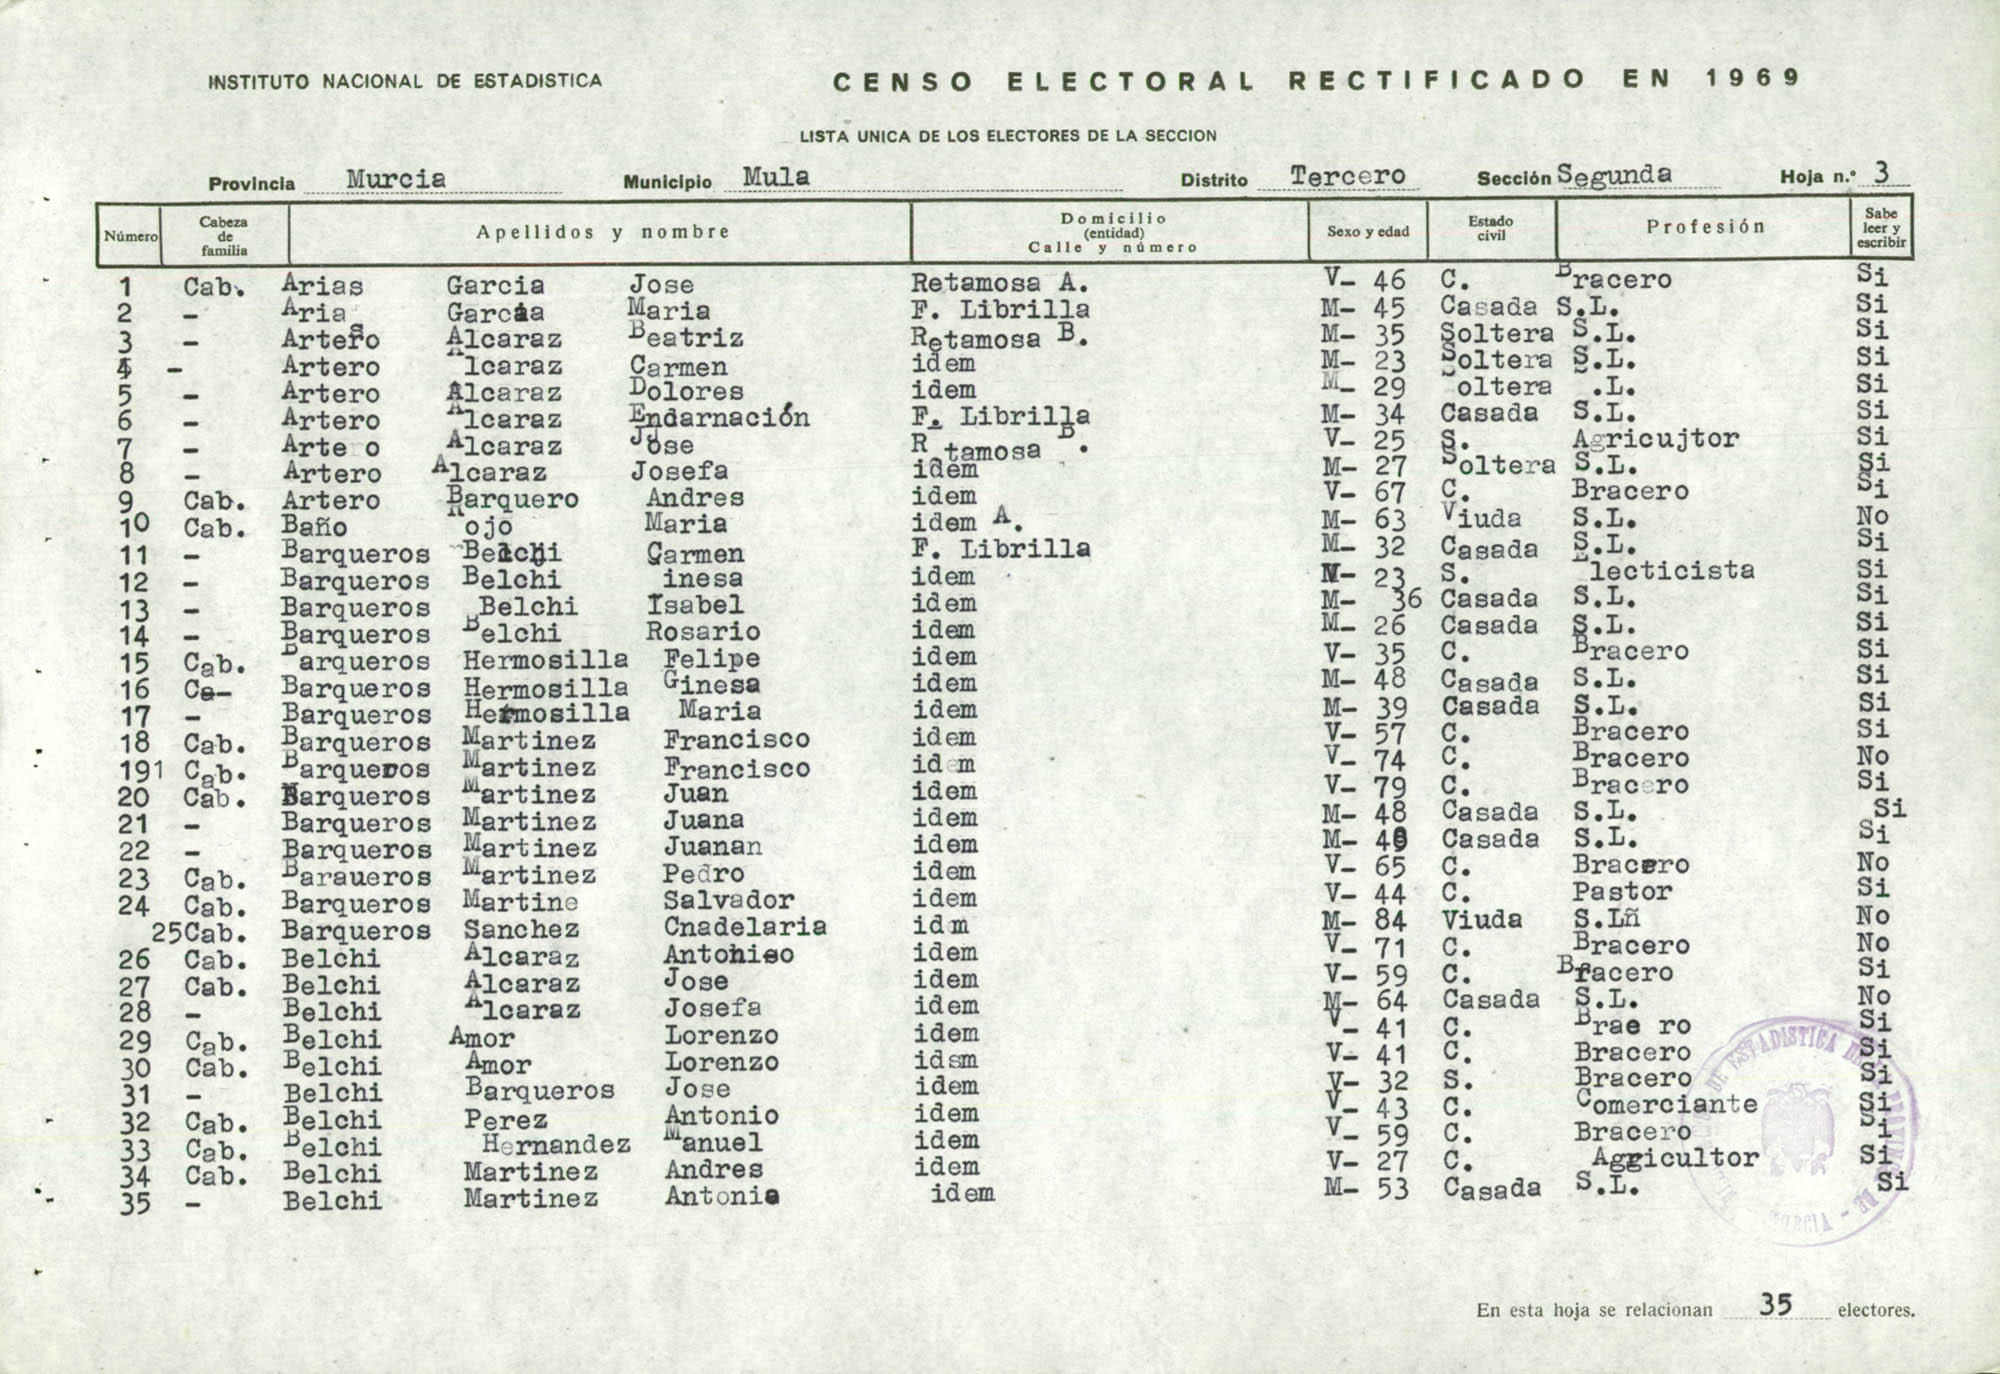 Censo electoral rectificado en 1969: listas definitivas de Mula, Distrito 3º, sección 2ª.